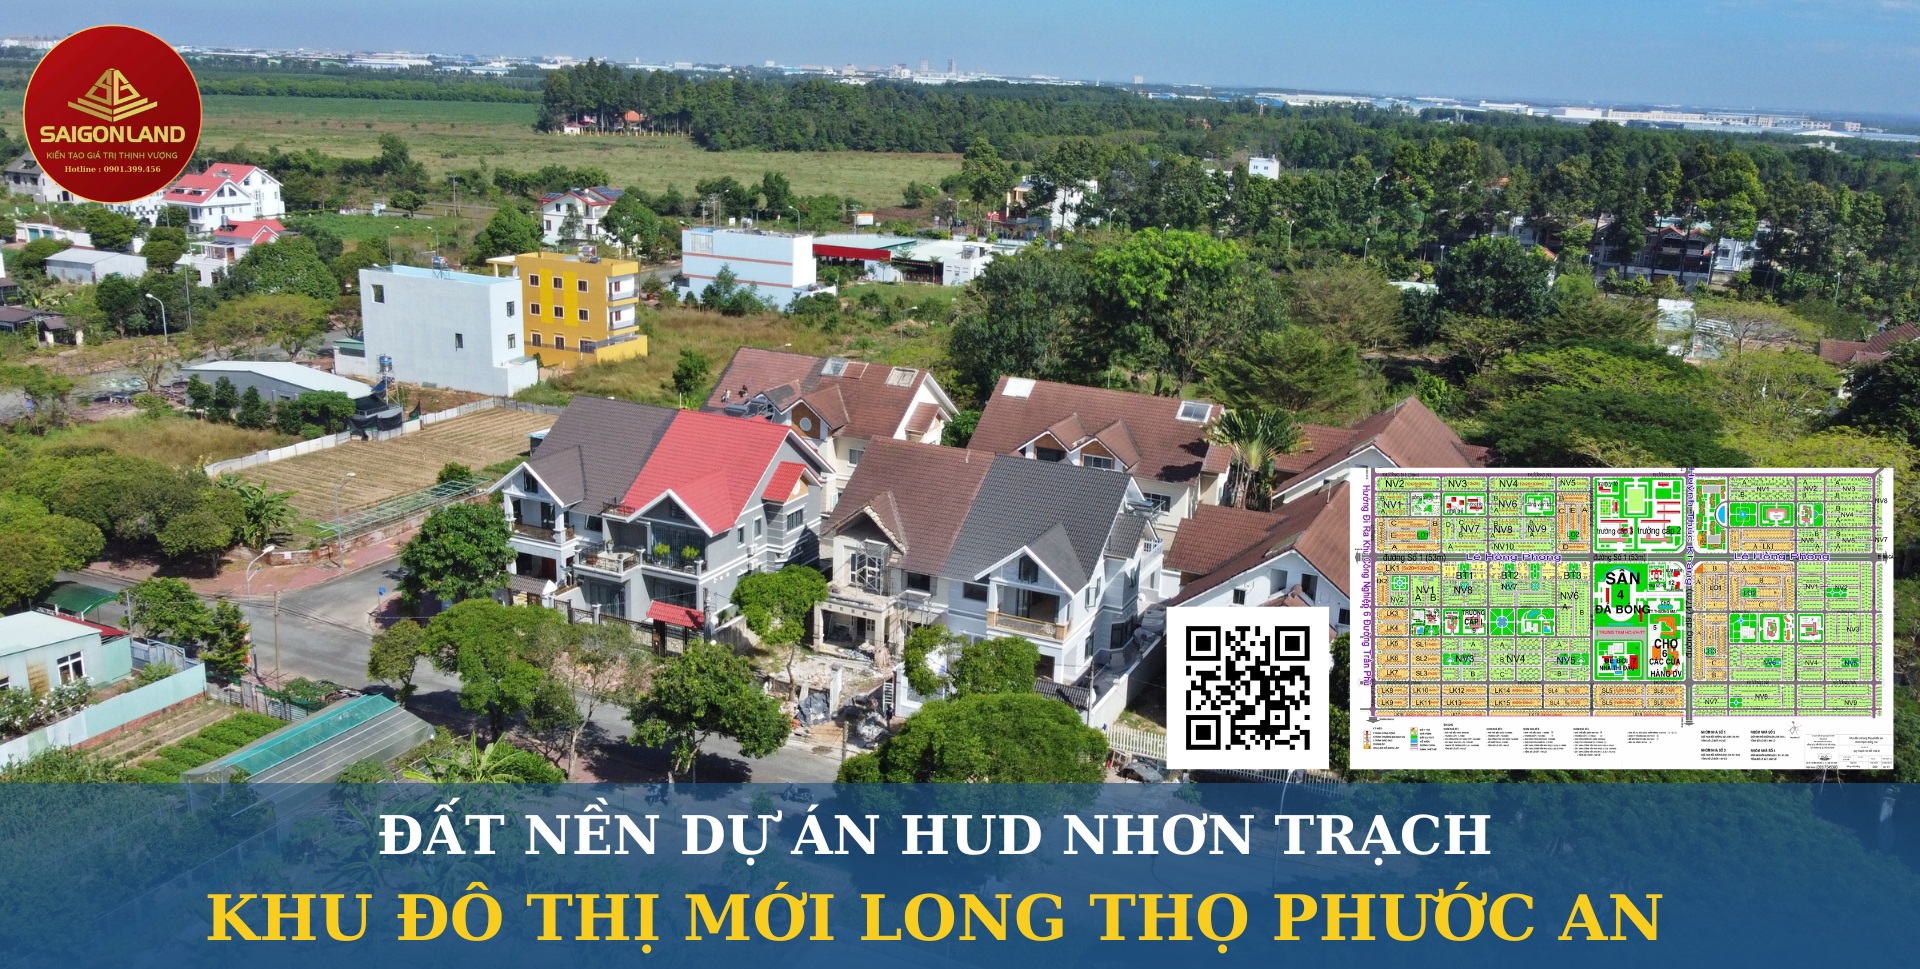 Saigonland - Mua Nhanh, Bán Nhanh đất nền dự án Hud - XDHN - Ecosun Nhơn Trạch - Ảnh chính